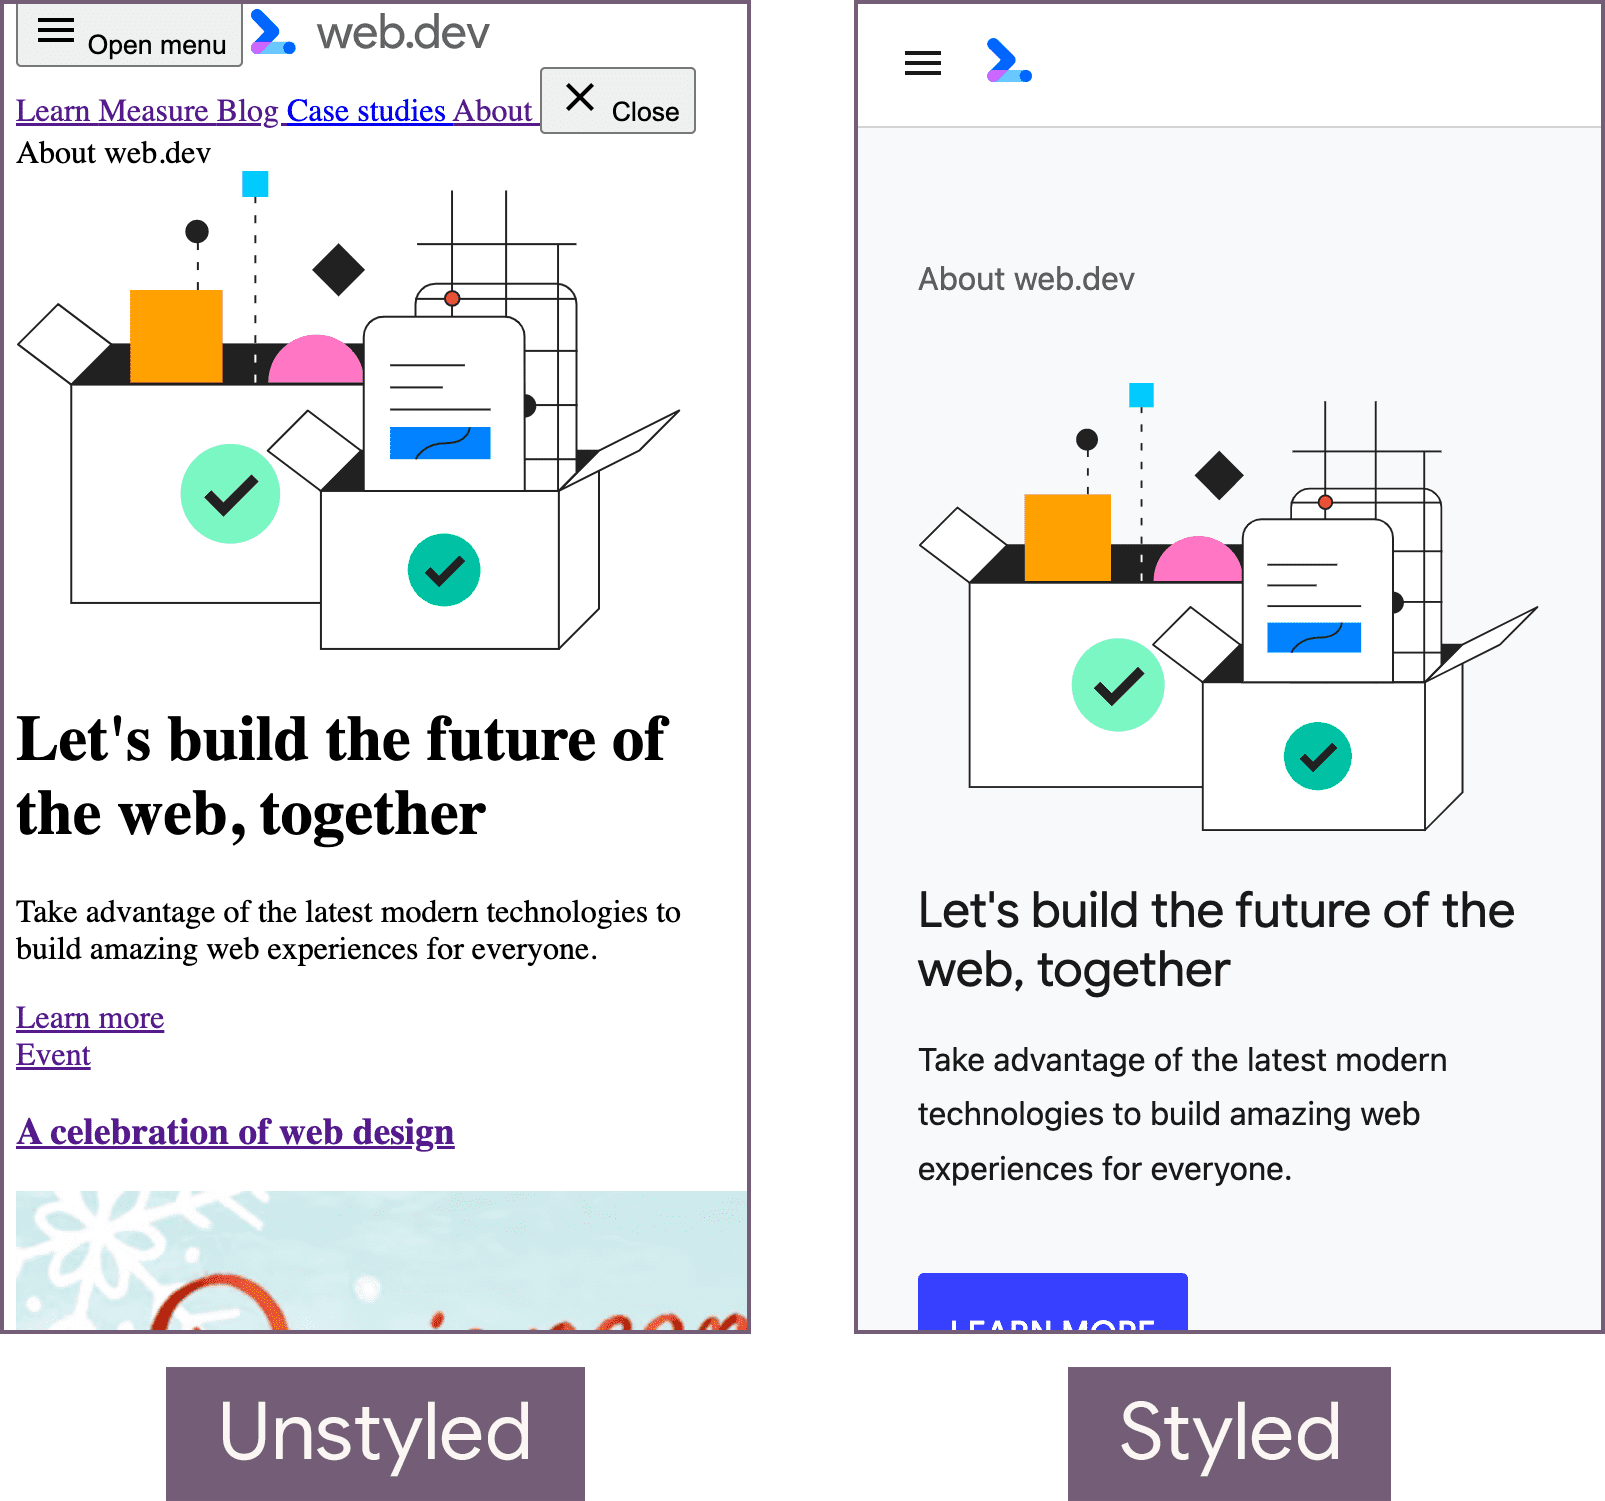 スタイル設定されていない状態（左）とスタイル設定済みの状態（右）の web.dev ホームページ。